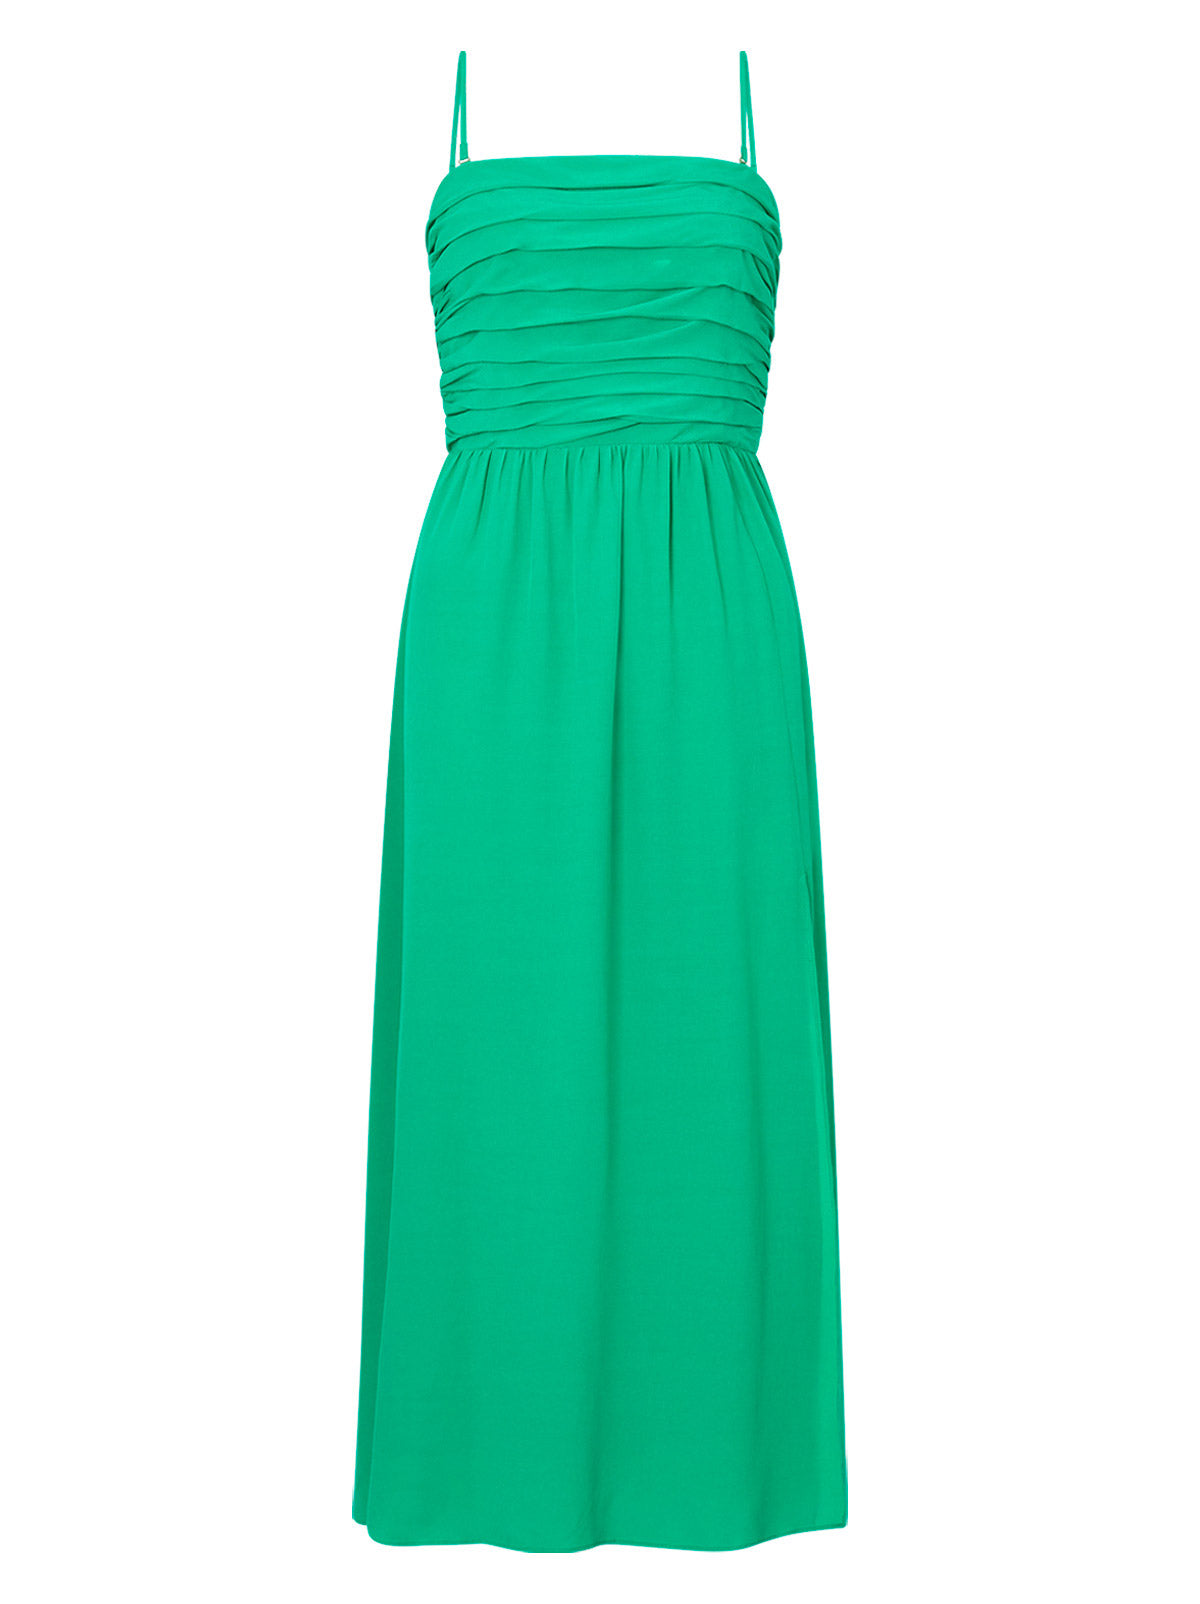 Genevieve Green Midi Dress by KITRI Studio